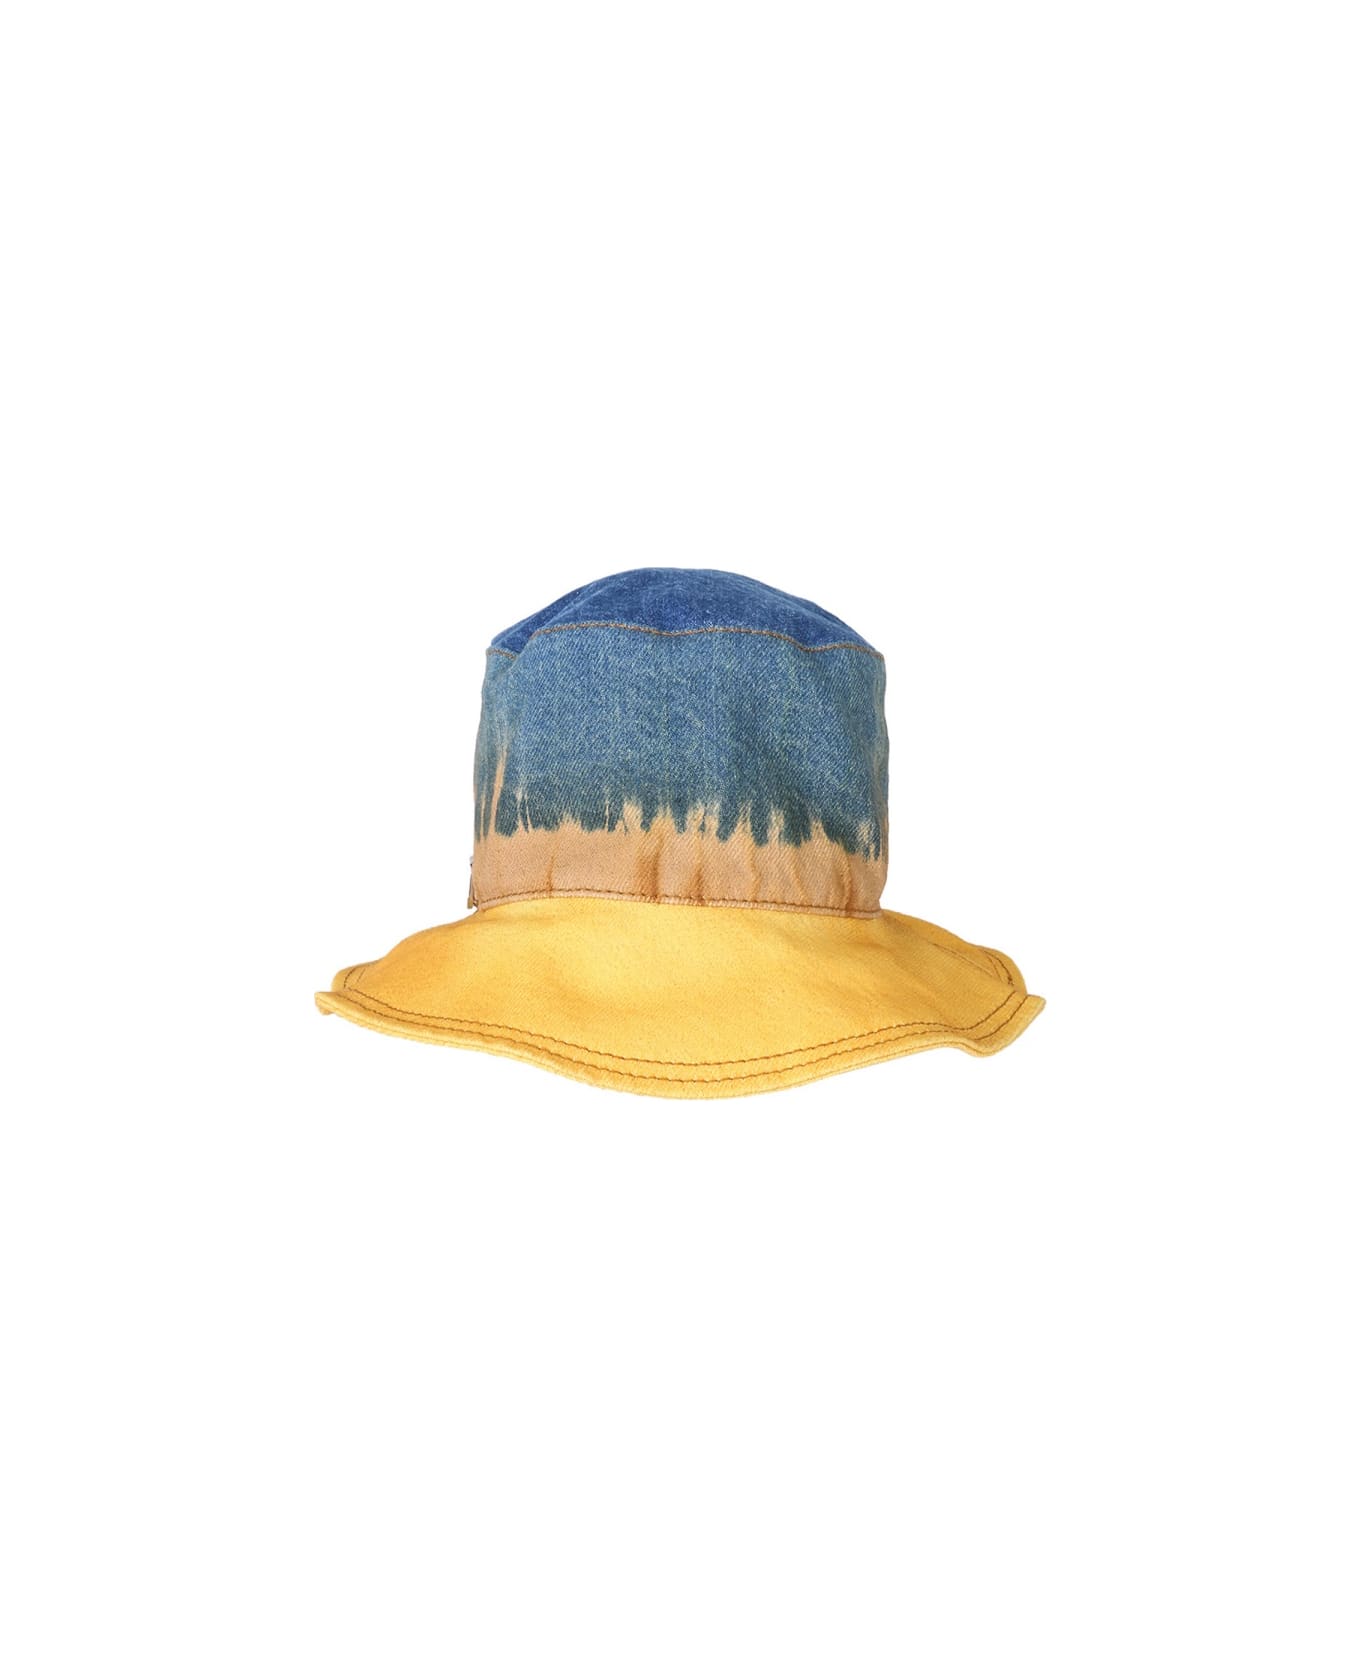 Alberta Ferretti Bucket Hat With Tie Dye Print - MULTICOLOUR 帽子